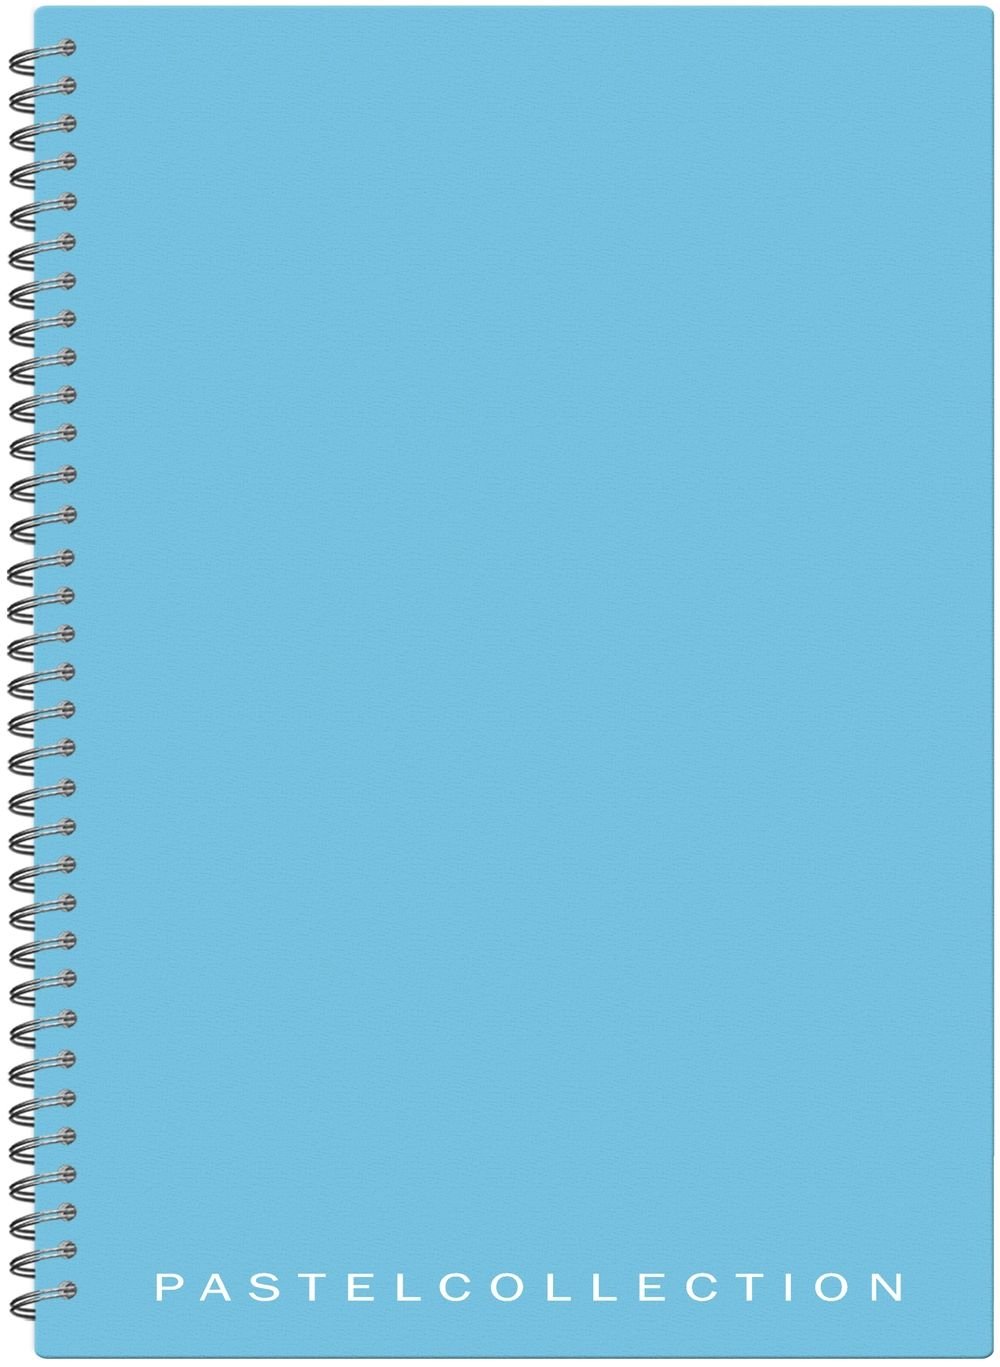 Бизнес-тетрадь Pastel Collection Blue/Mint имеет пластиковую обложку пастельно голубого/мятного цвета толщиной 0,5 мм. Внутренний блок на металлическом гребне включает в себя 96 листов офсетной бумаги плотностью 80 г/м2 в клетку. Оснащен титульным листом с персональными данными. Формат А4. Скругленные края увеличивают срок службы, позволяют бережно переносить тетрадь в сумке, рюкзаке или портфеле.